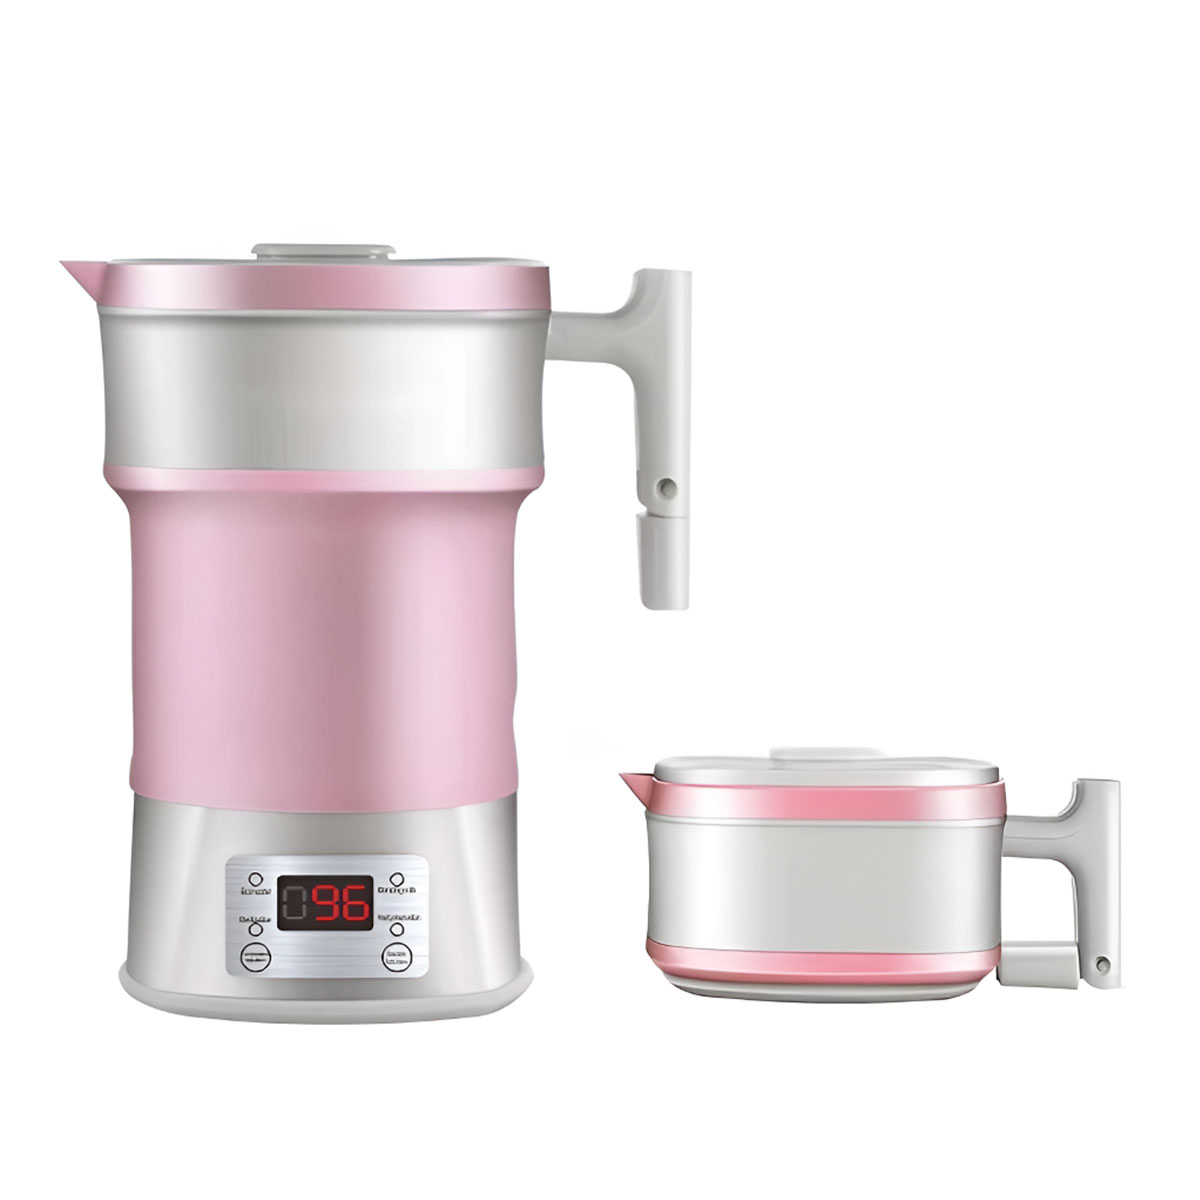 immer Reise-Wasserkocher: praktisch BRIGHTAKE Wasserkocher, Kompakt, und Rosa einsatzbereit